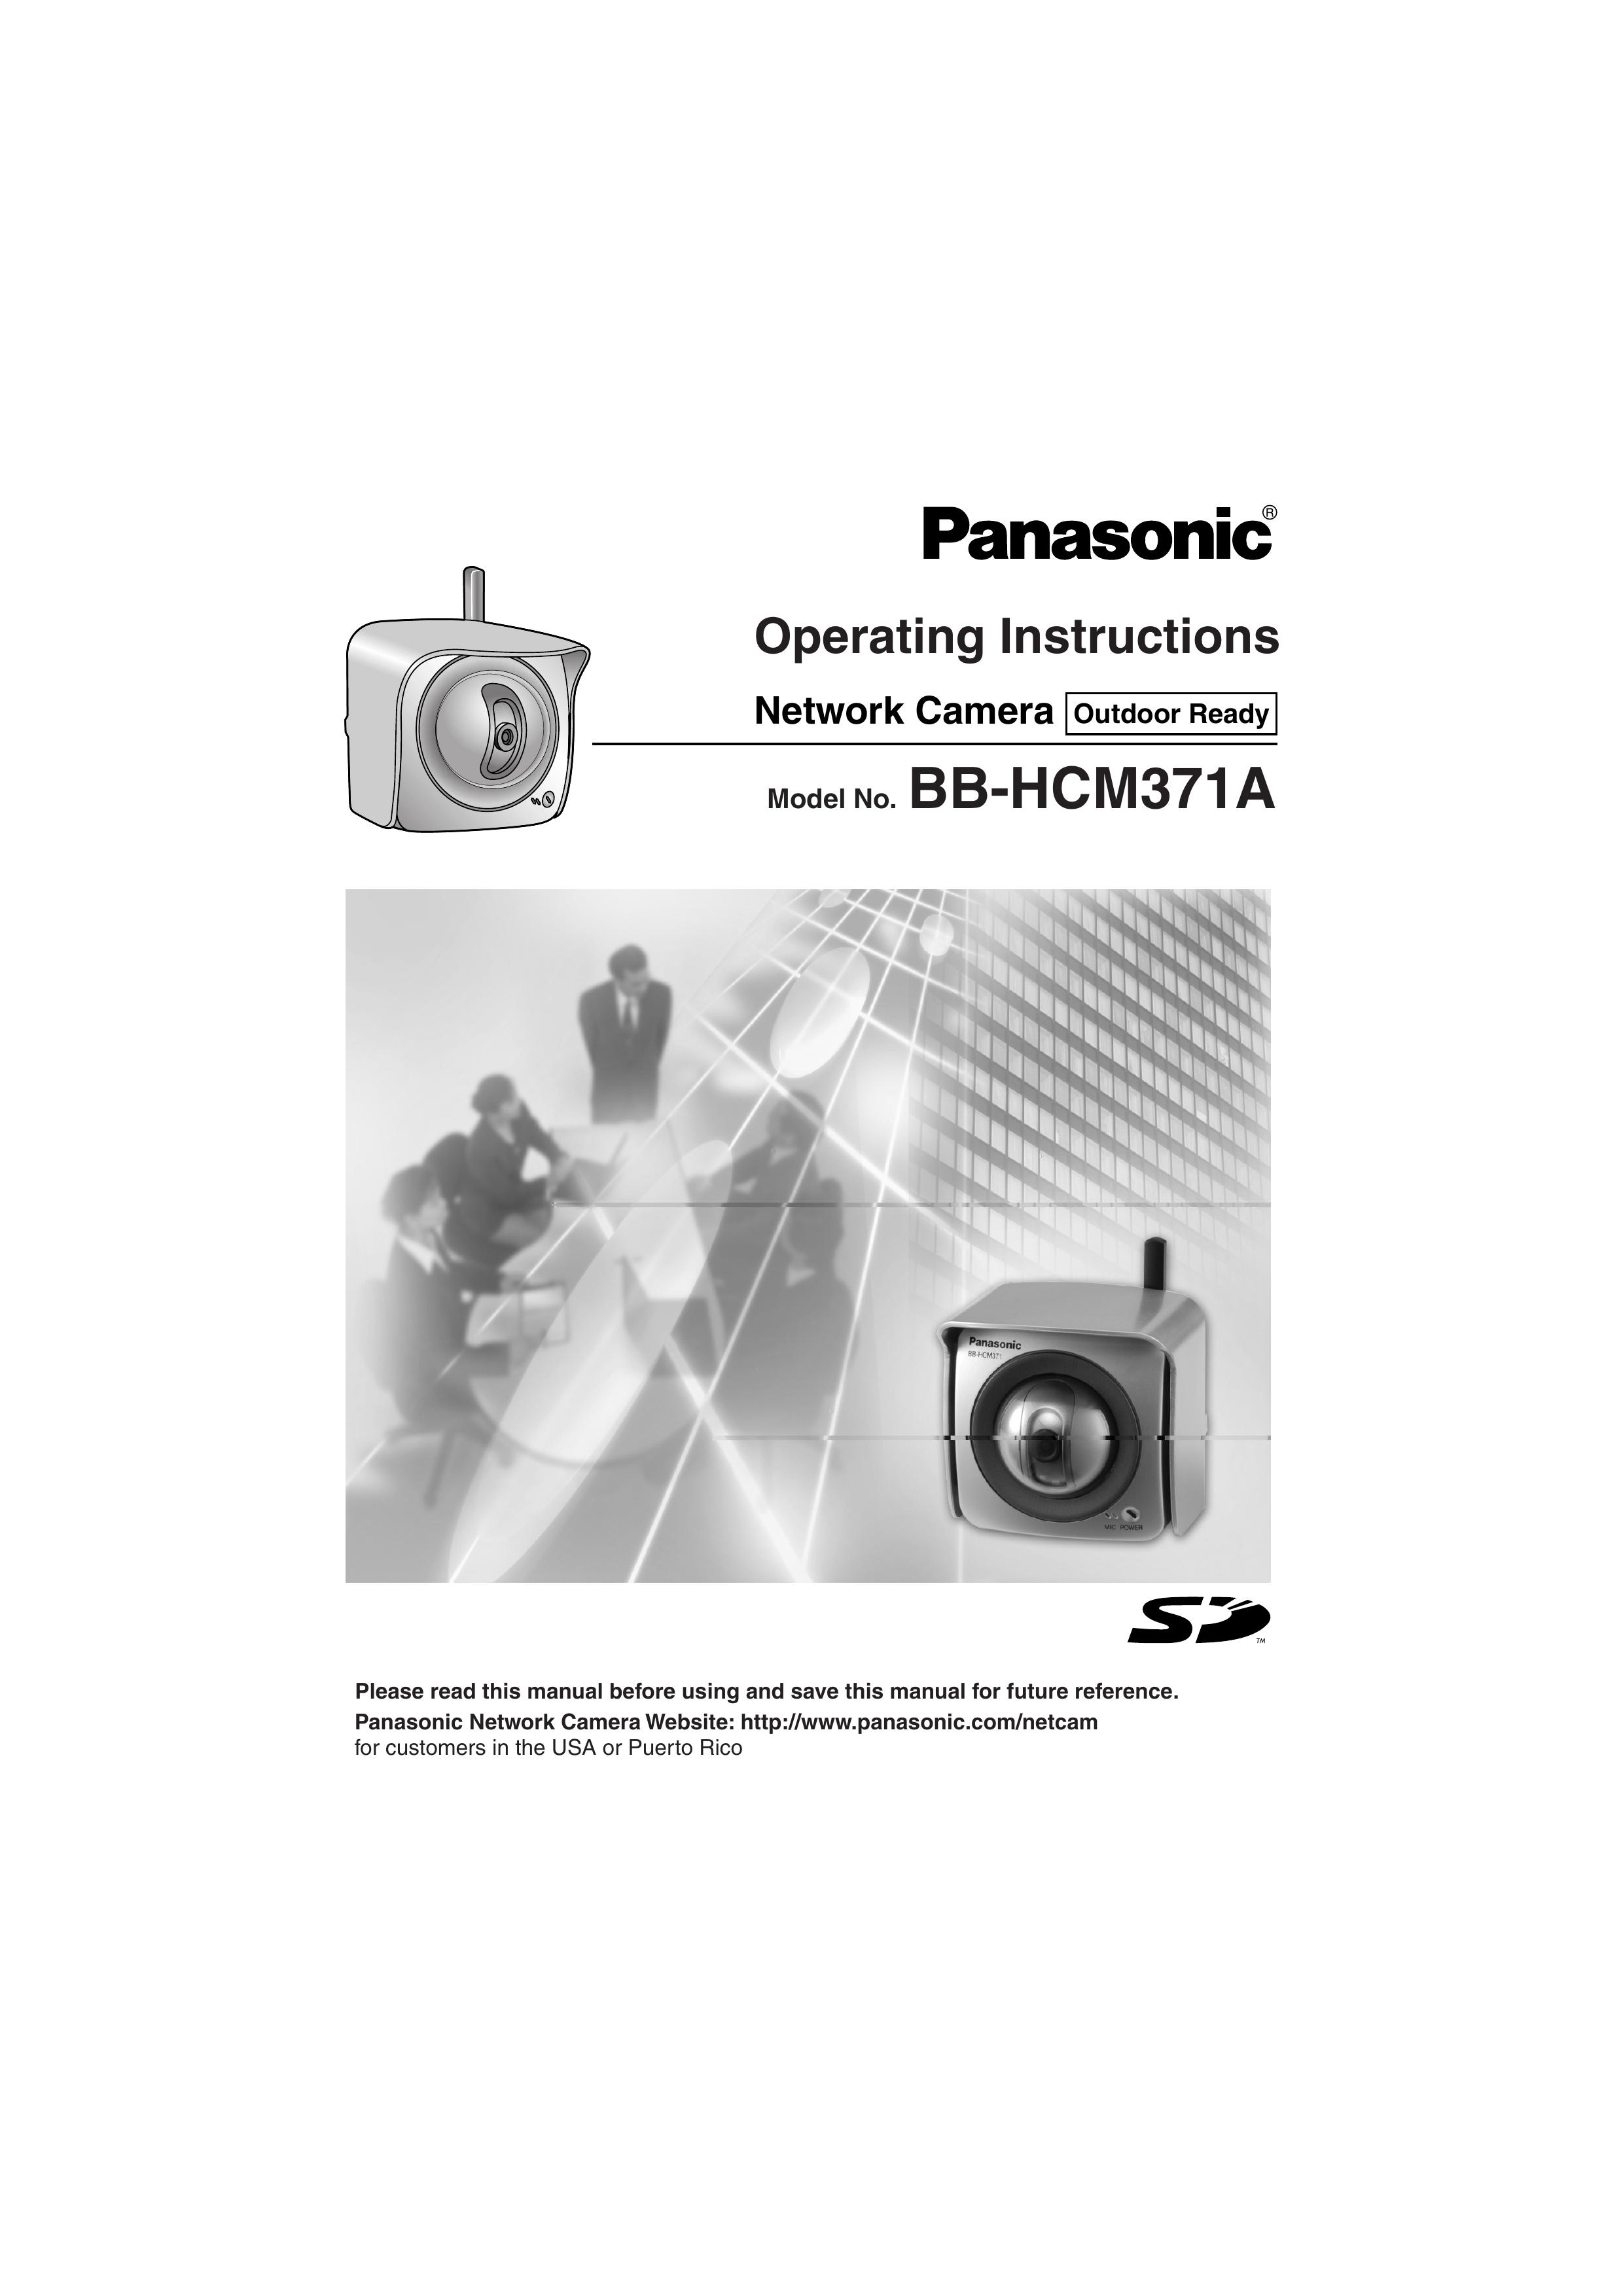 Panasonic BB-HCM371A Security Camera User Manual